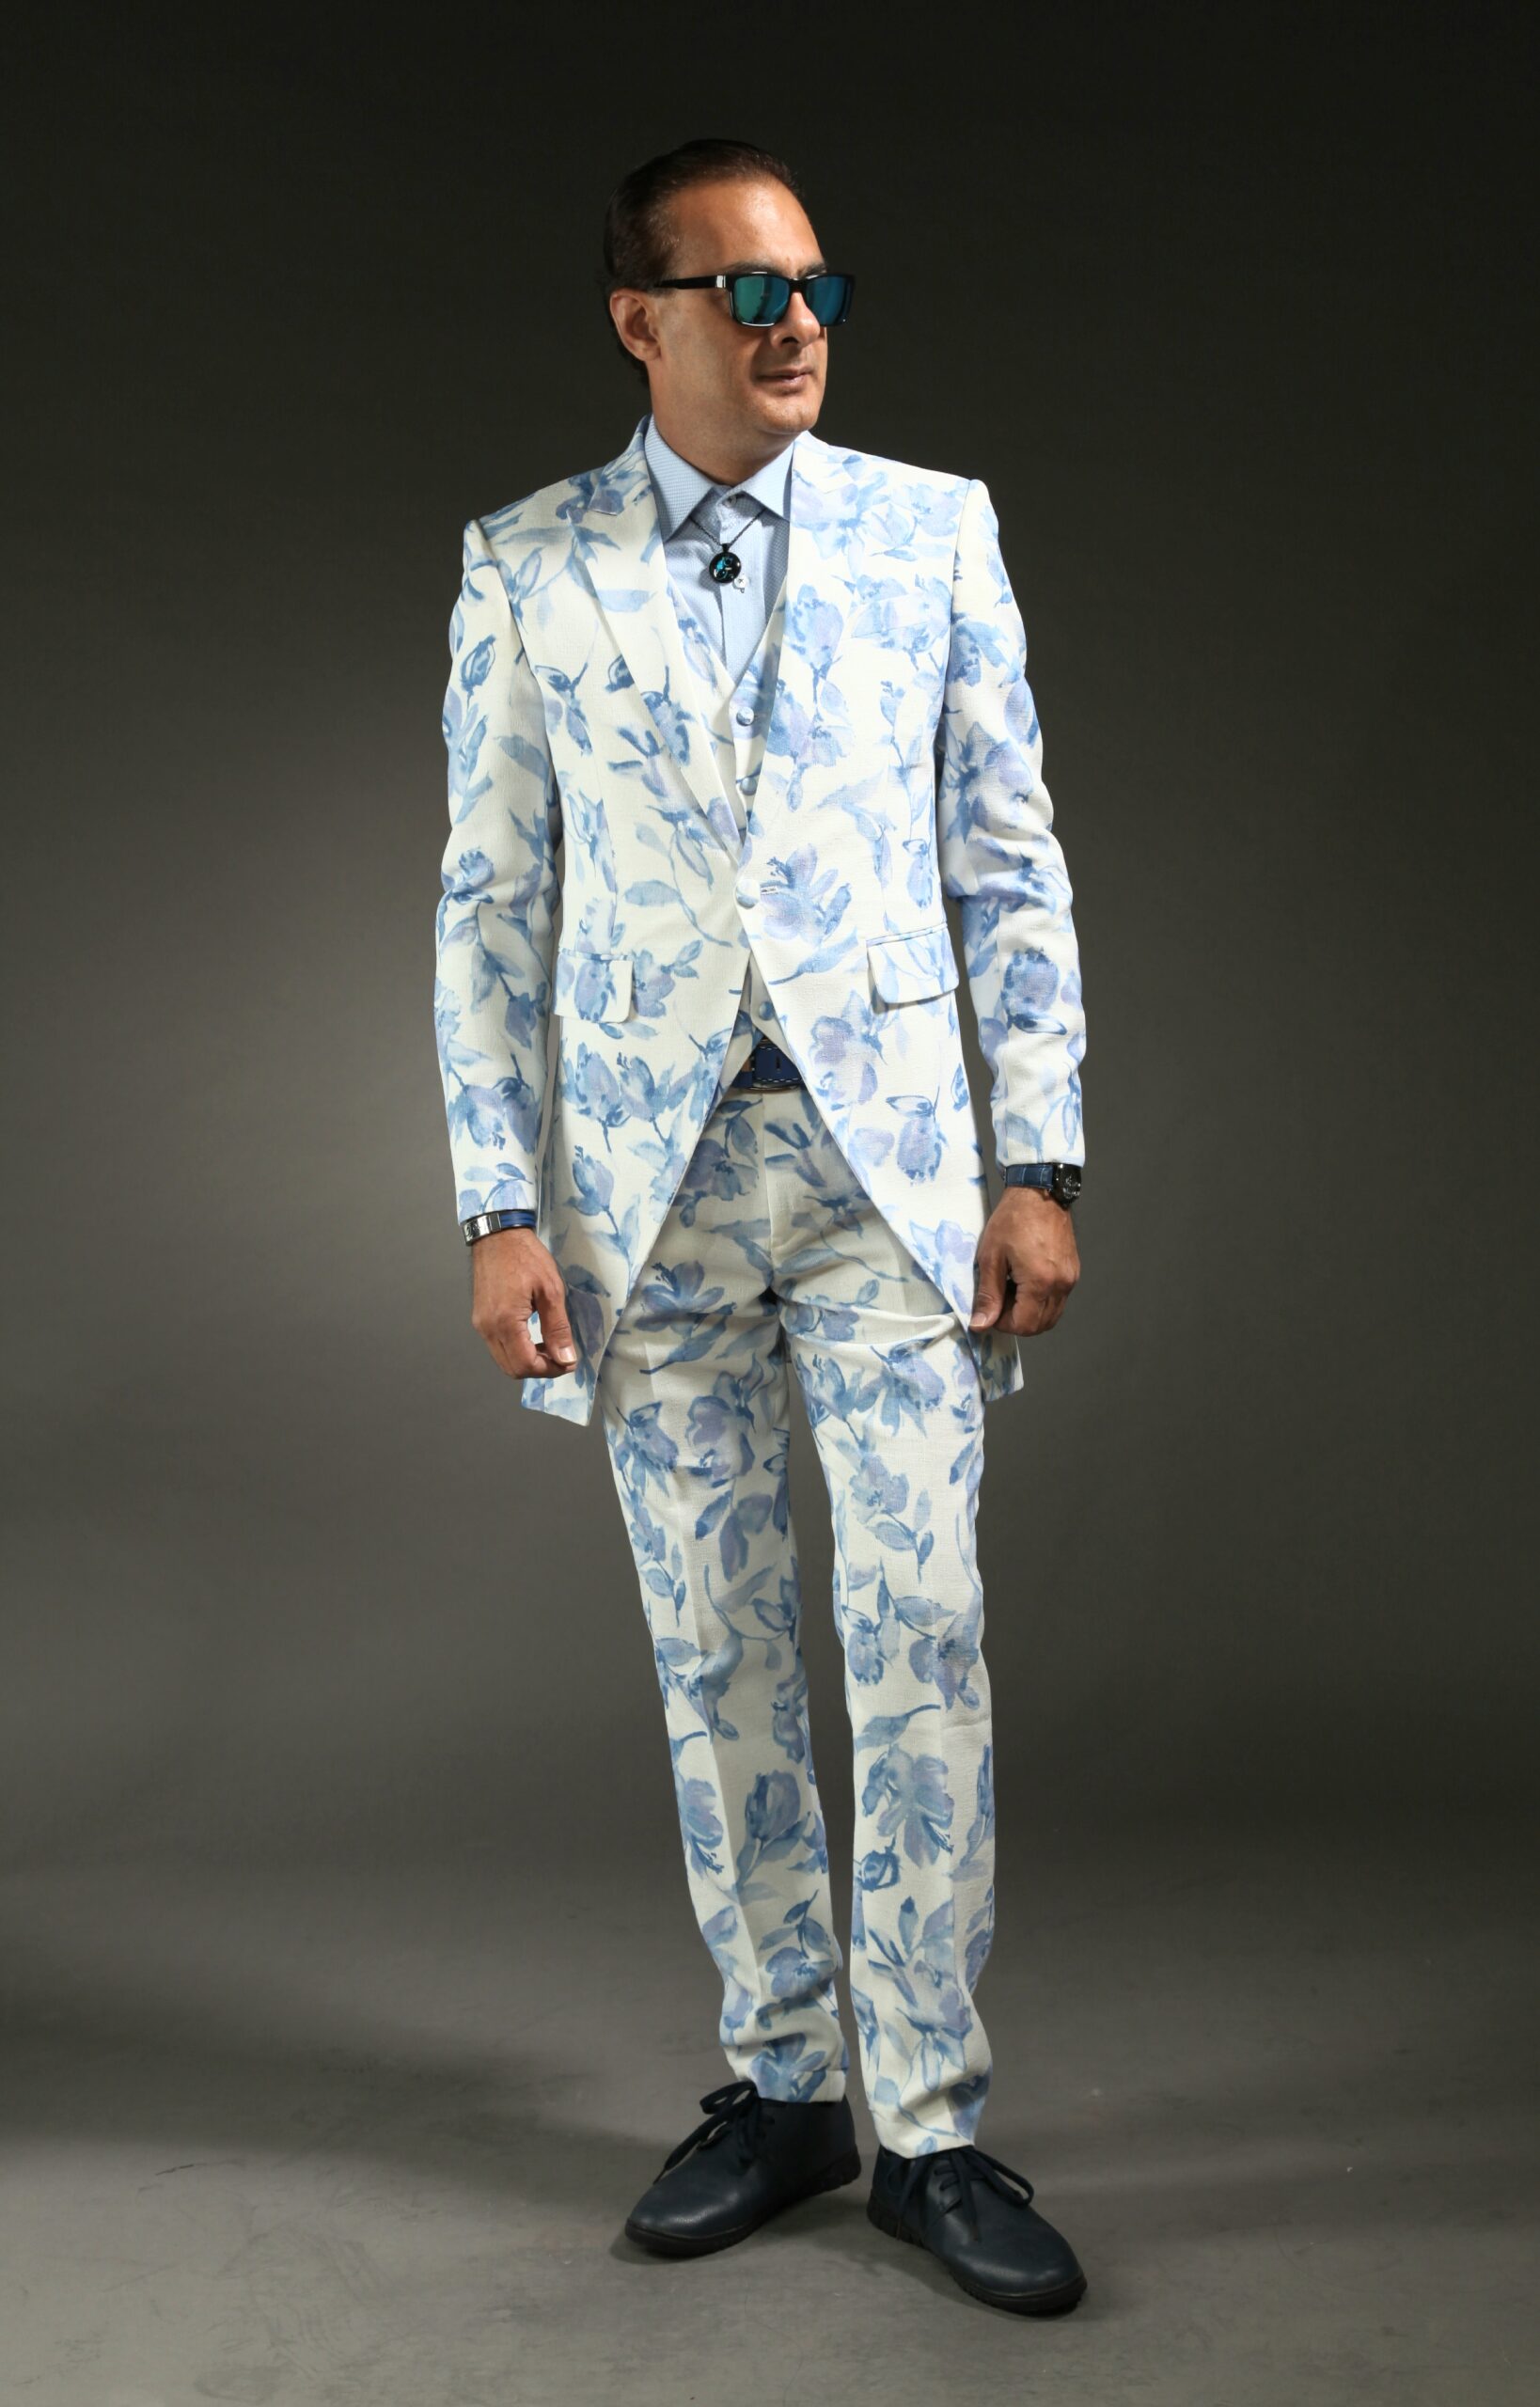 MST-5013-01-rent_rental_hire_tuxedo_suit_black_tie_suit_designer_suits_shop_tailor_tailors_singapore_wedding